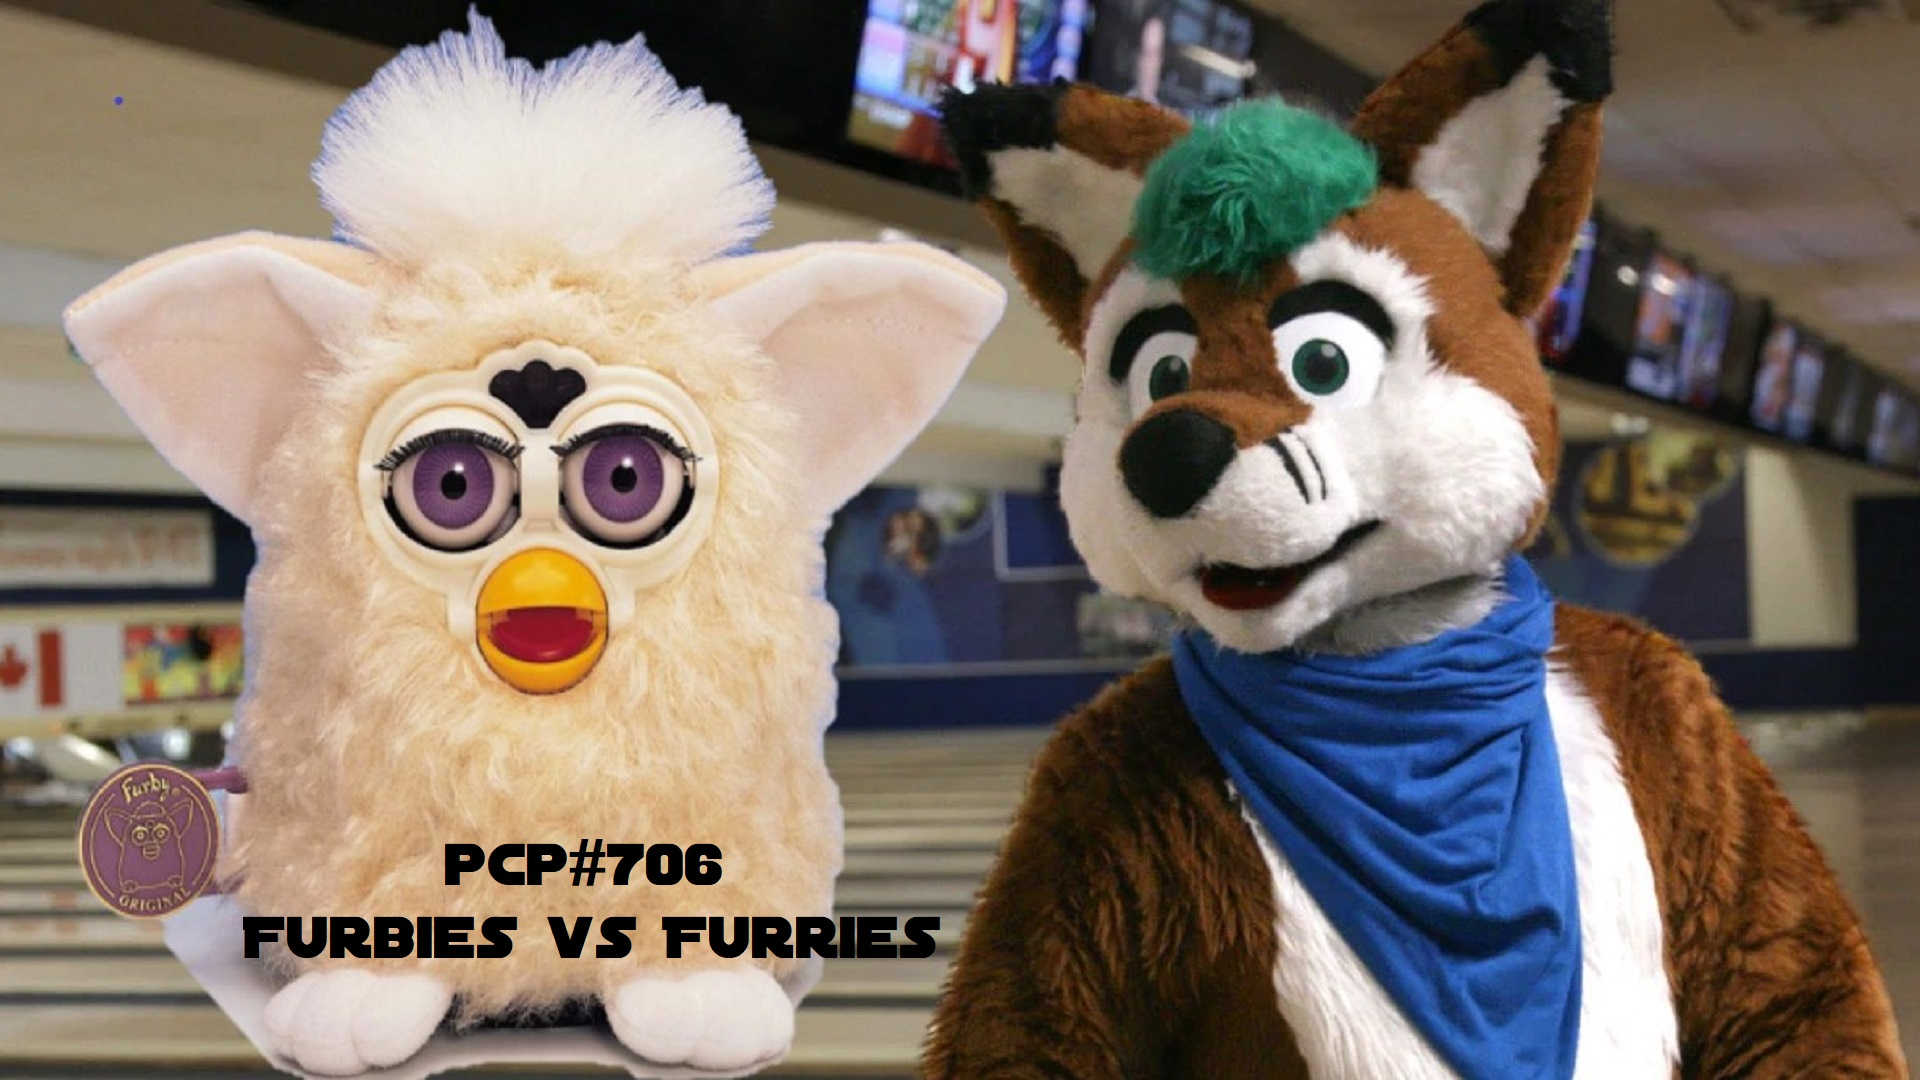 PCP#706... Furbies vs Furries.....